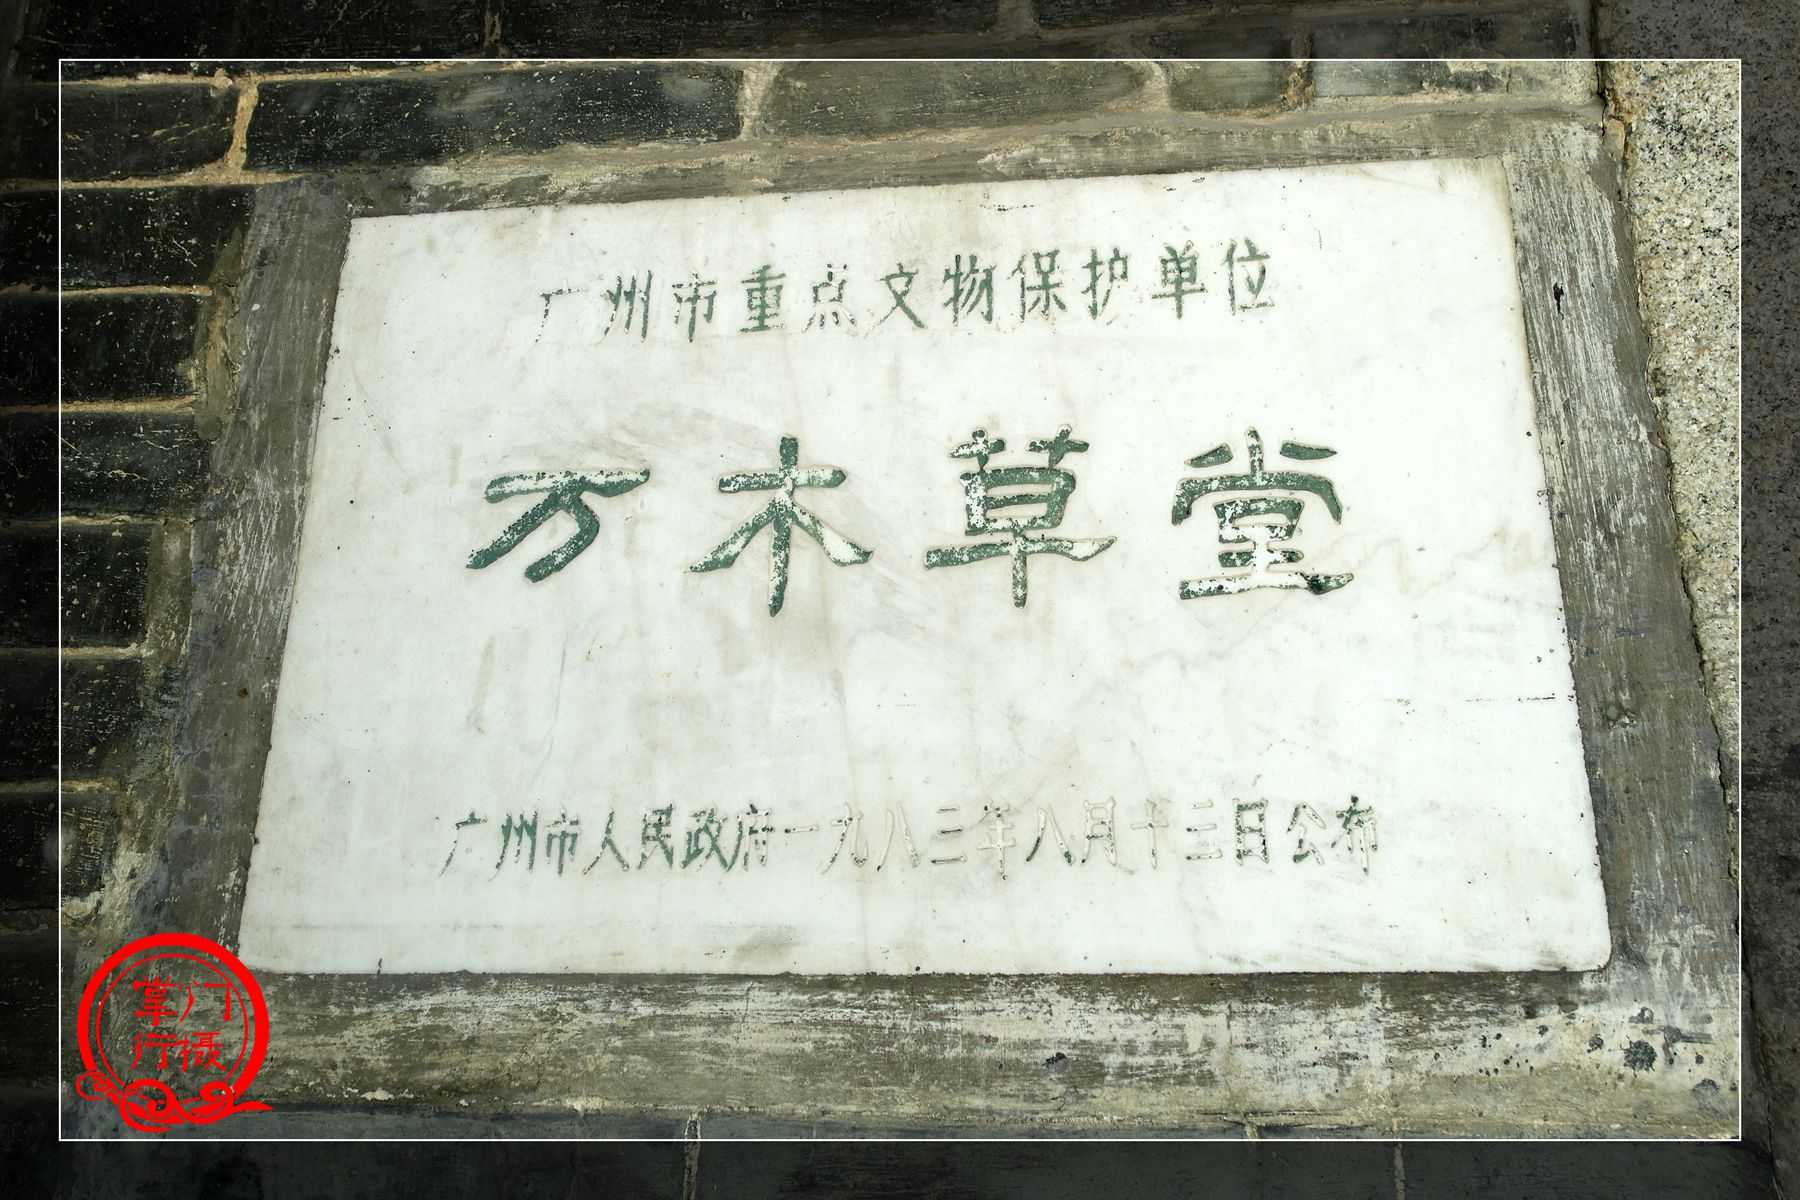 原创戊戌变法在北京策源地却在广州万木草堂里走出了梁启超